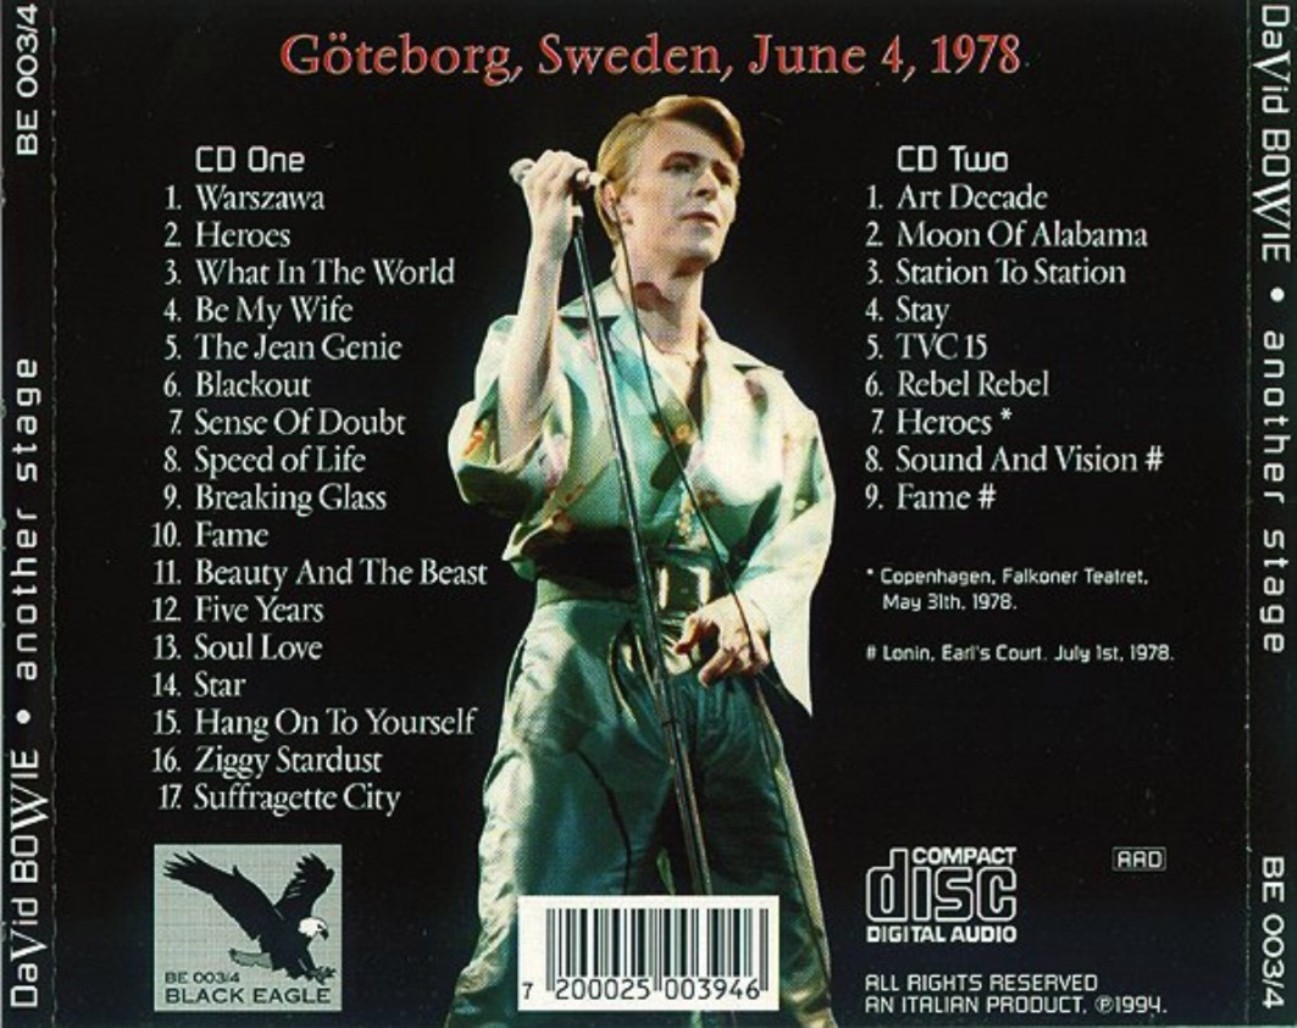 DavidBowie1978-06-04AnotherStageGotenborgSweden (4).jpg